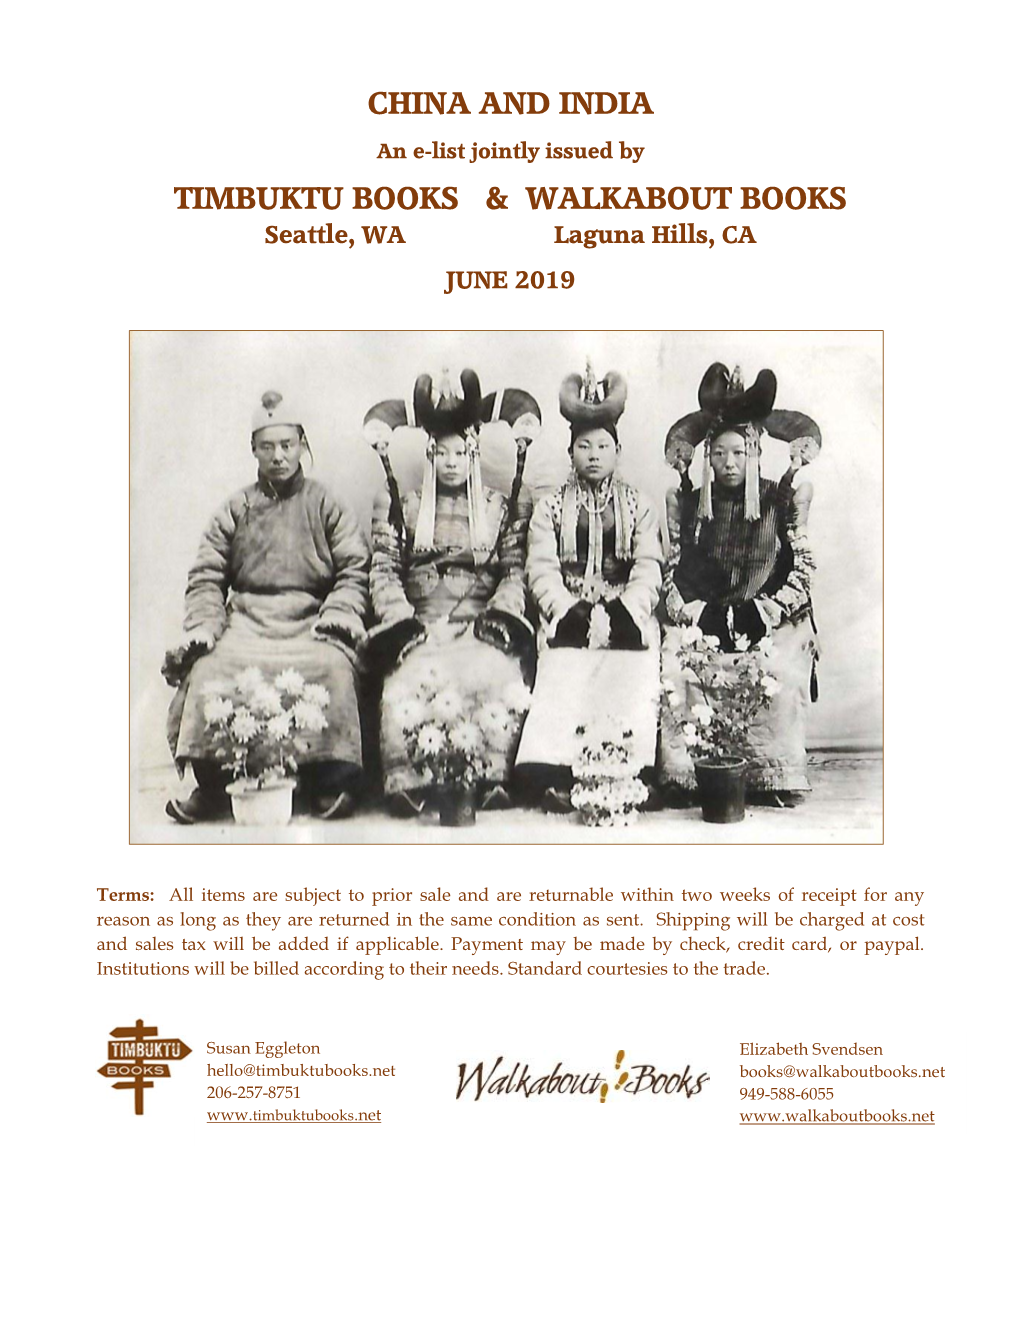 China and India Timbuktu Books & Walkabout Books